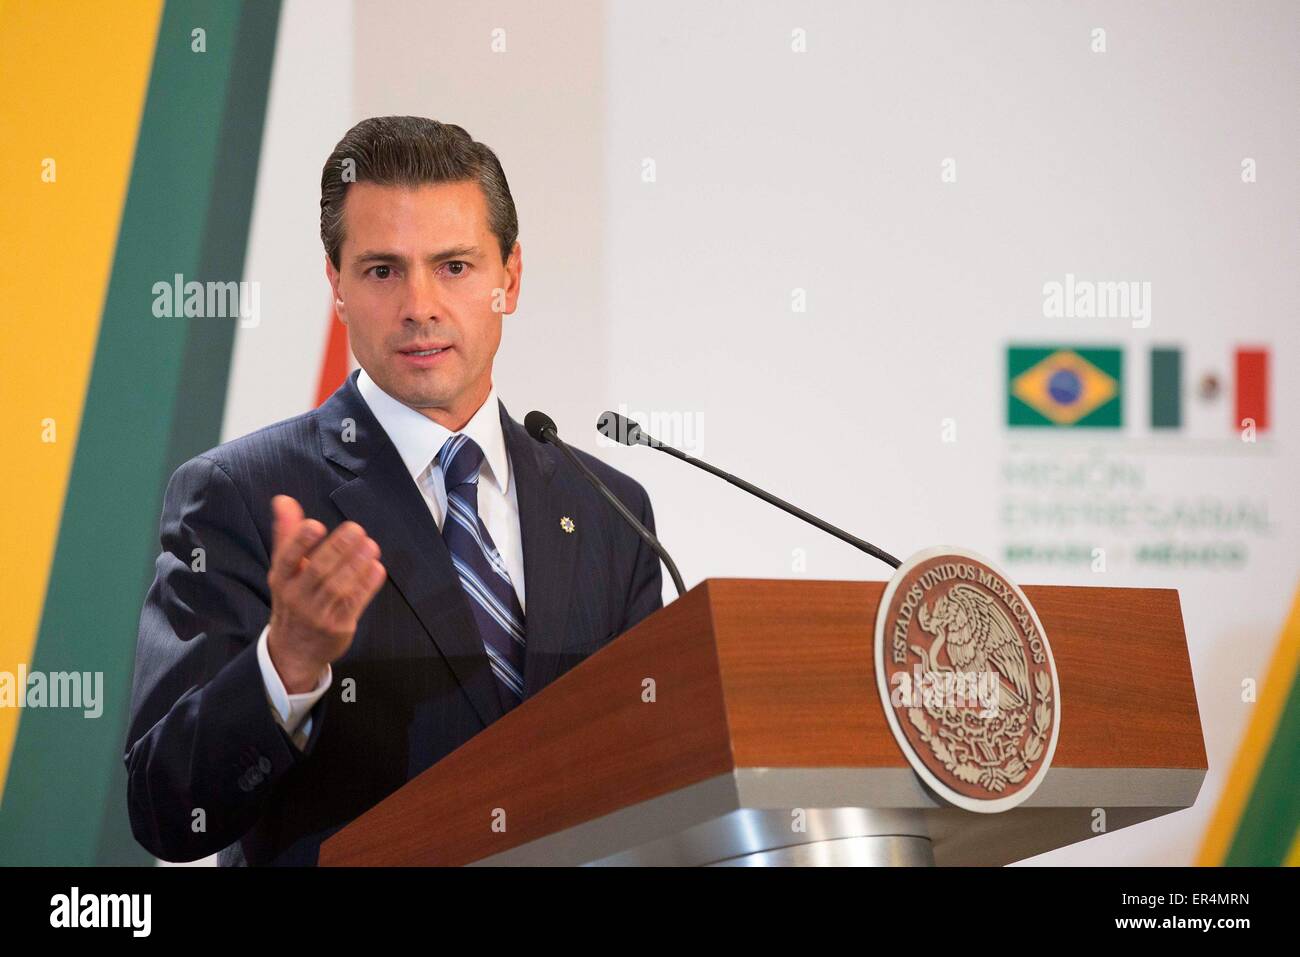 La ville de Mexico, Mexique. 26 mai, 2015. Le Président du Mexique, Enrique Peña Nieto, prononce un discours lors de la réunion d'entreprise Mexico-Brazil, dans la ville de Mexico, capitale du Mexique, le 26 mai 2015. © NOTIMEX/Xinhua/Alamy Live News Banque D'Images